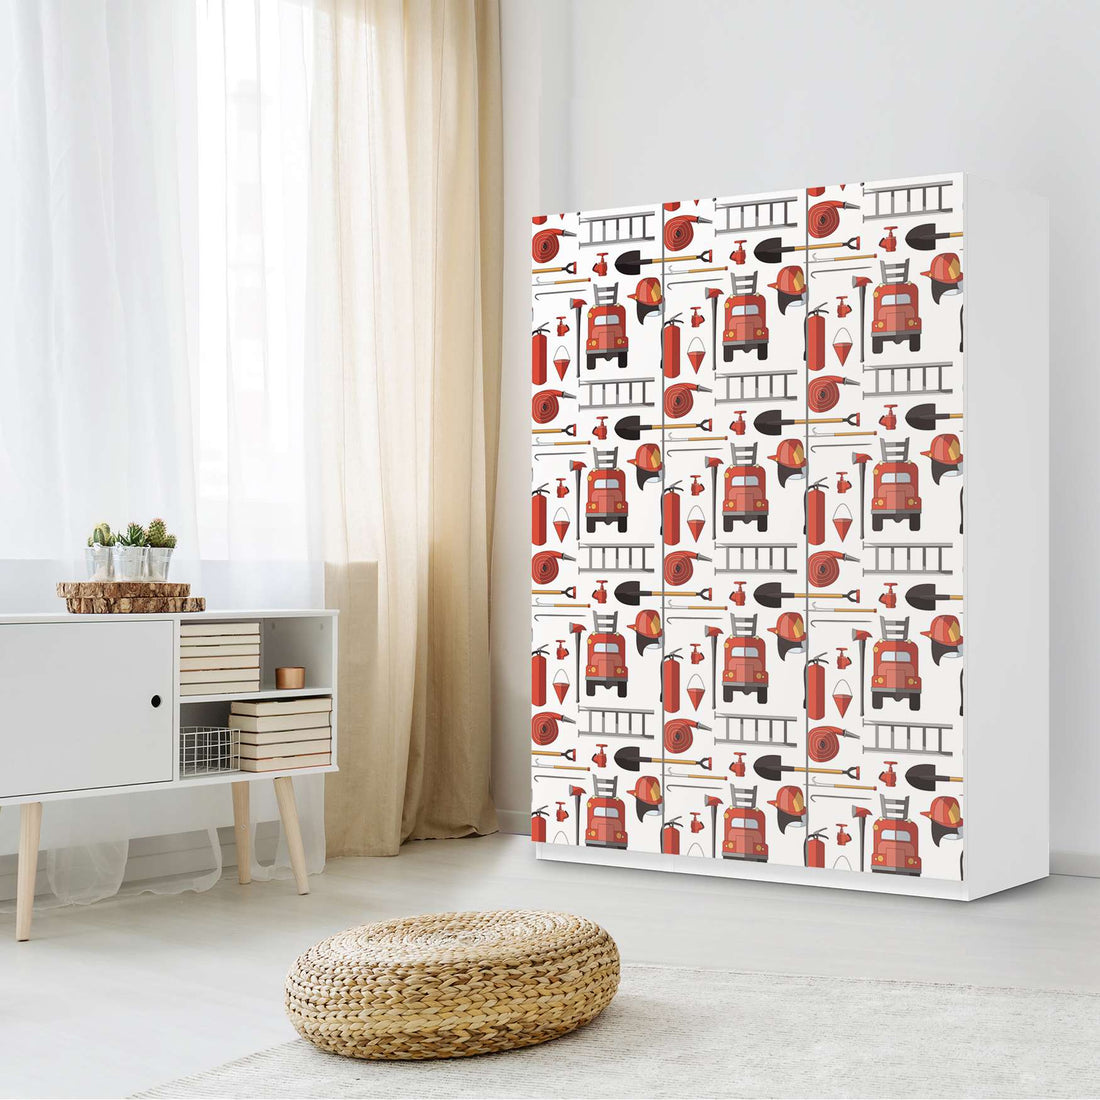 Folie für Möbel Firefighter - IKEA Pax Schrank 201 cm Höhe - 3 Türen - Kinderzimmer